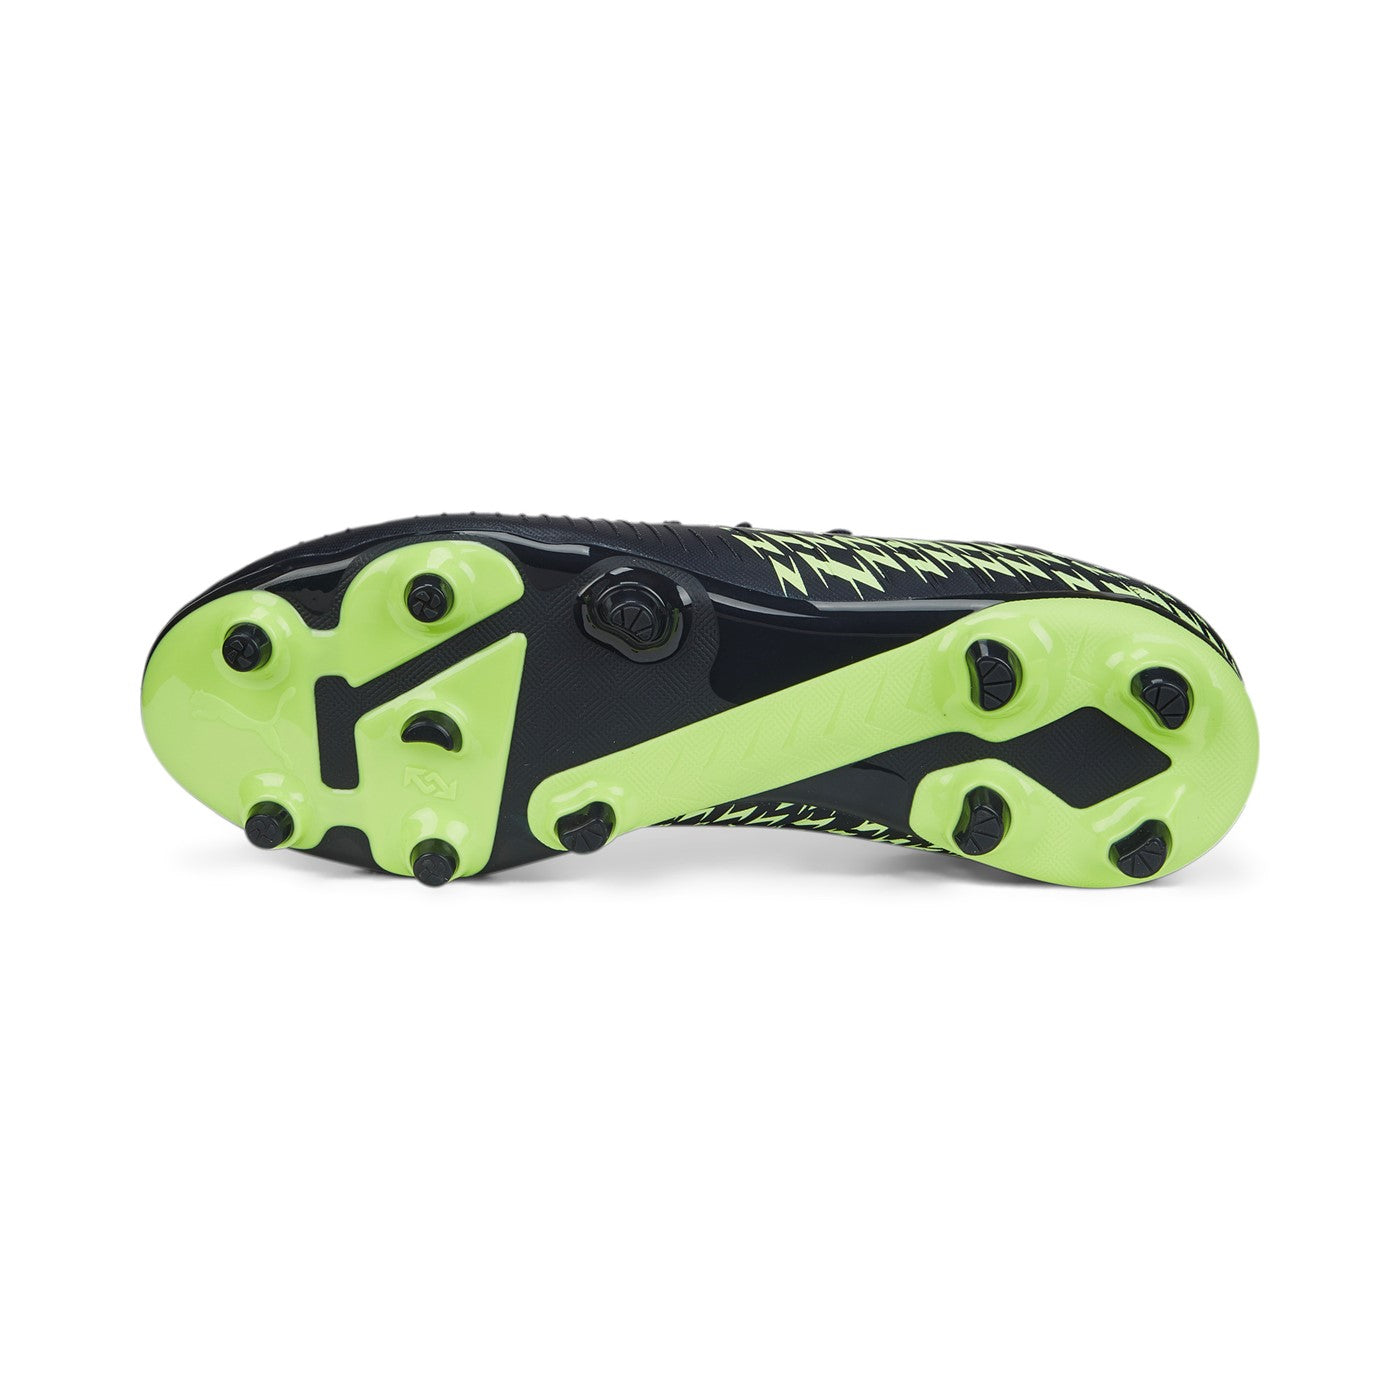 Puma scarpa da calcio da uomo Future Z 4.4 FG-AG 107005 01 parisian-fizzy-pistachio